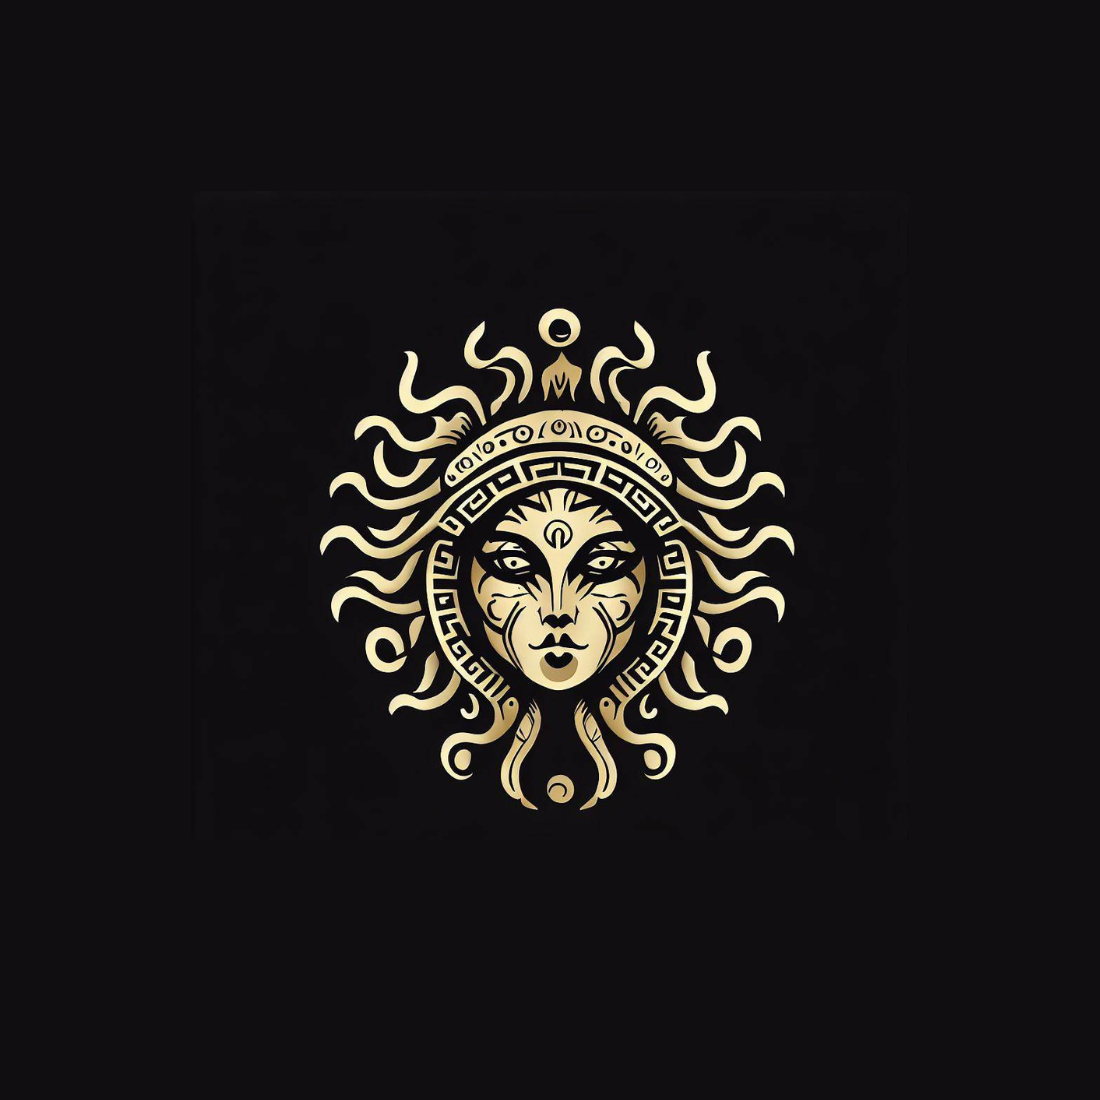 Medusa logo preview image.